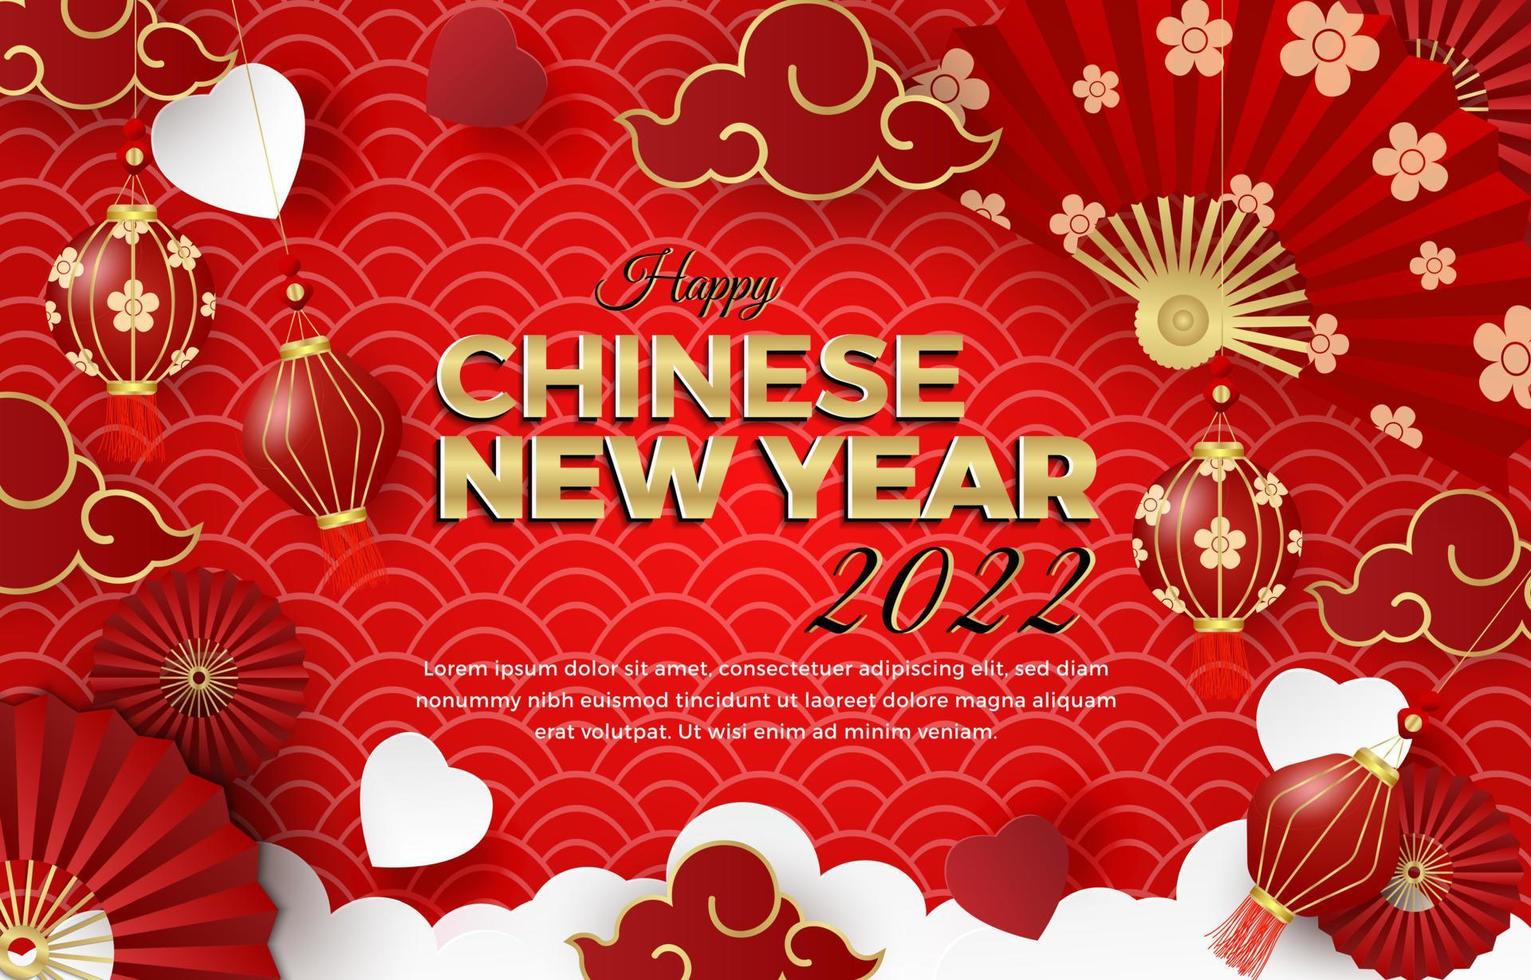 frohes chinesisches neujahr 2022. plakatdesign, flyer, grußkarte vektor